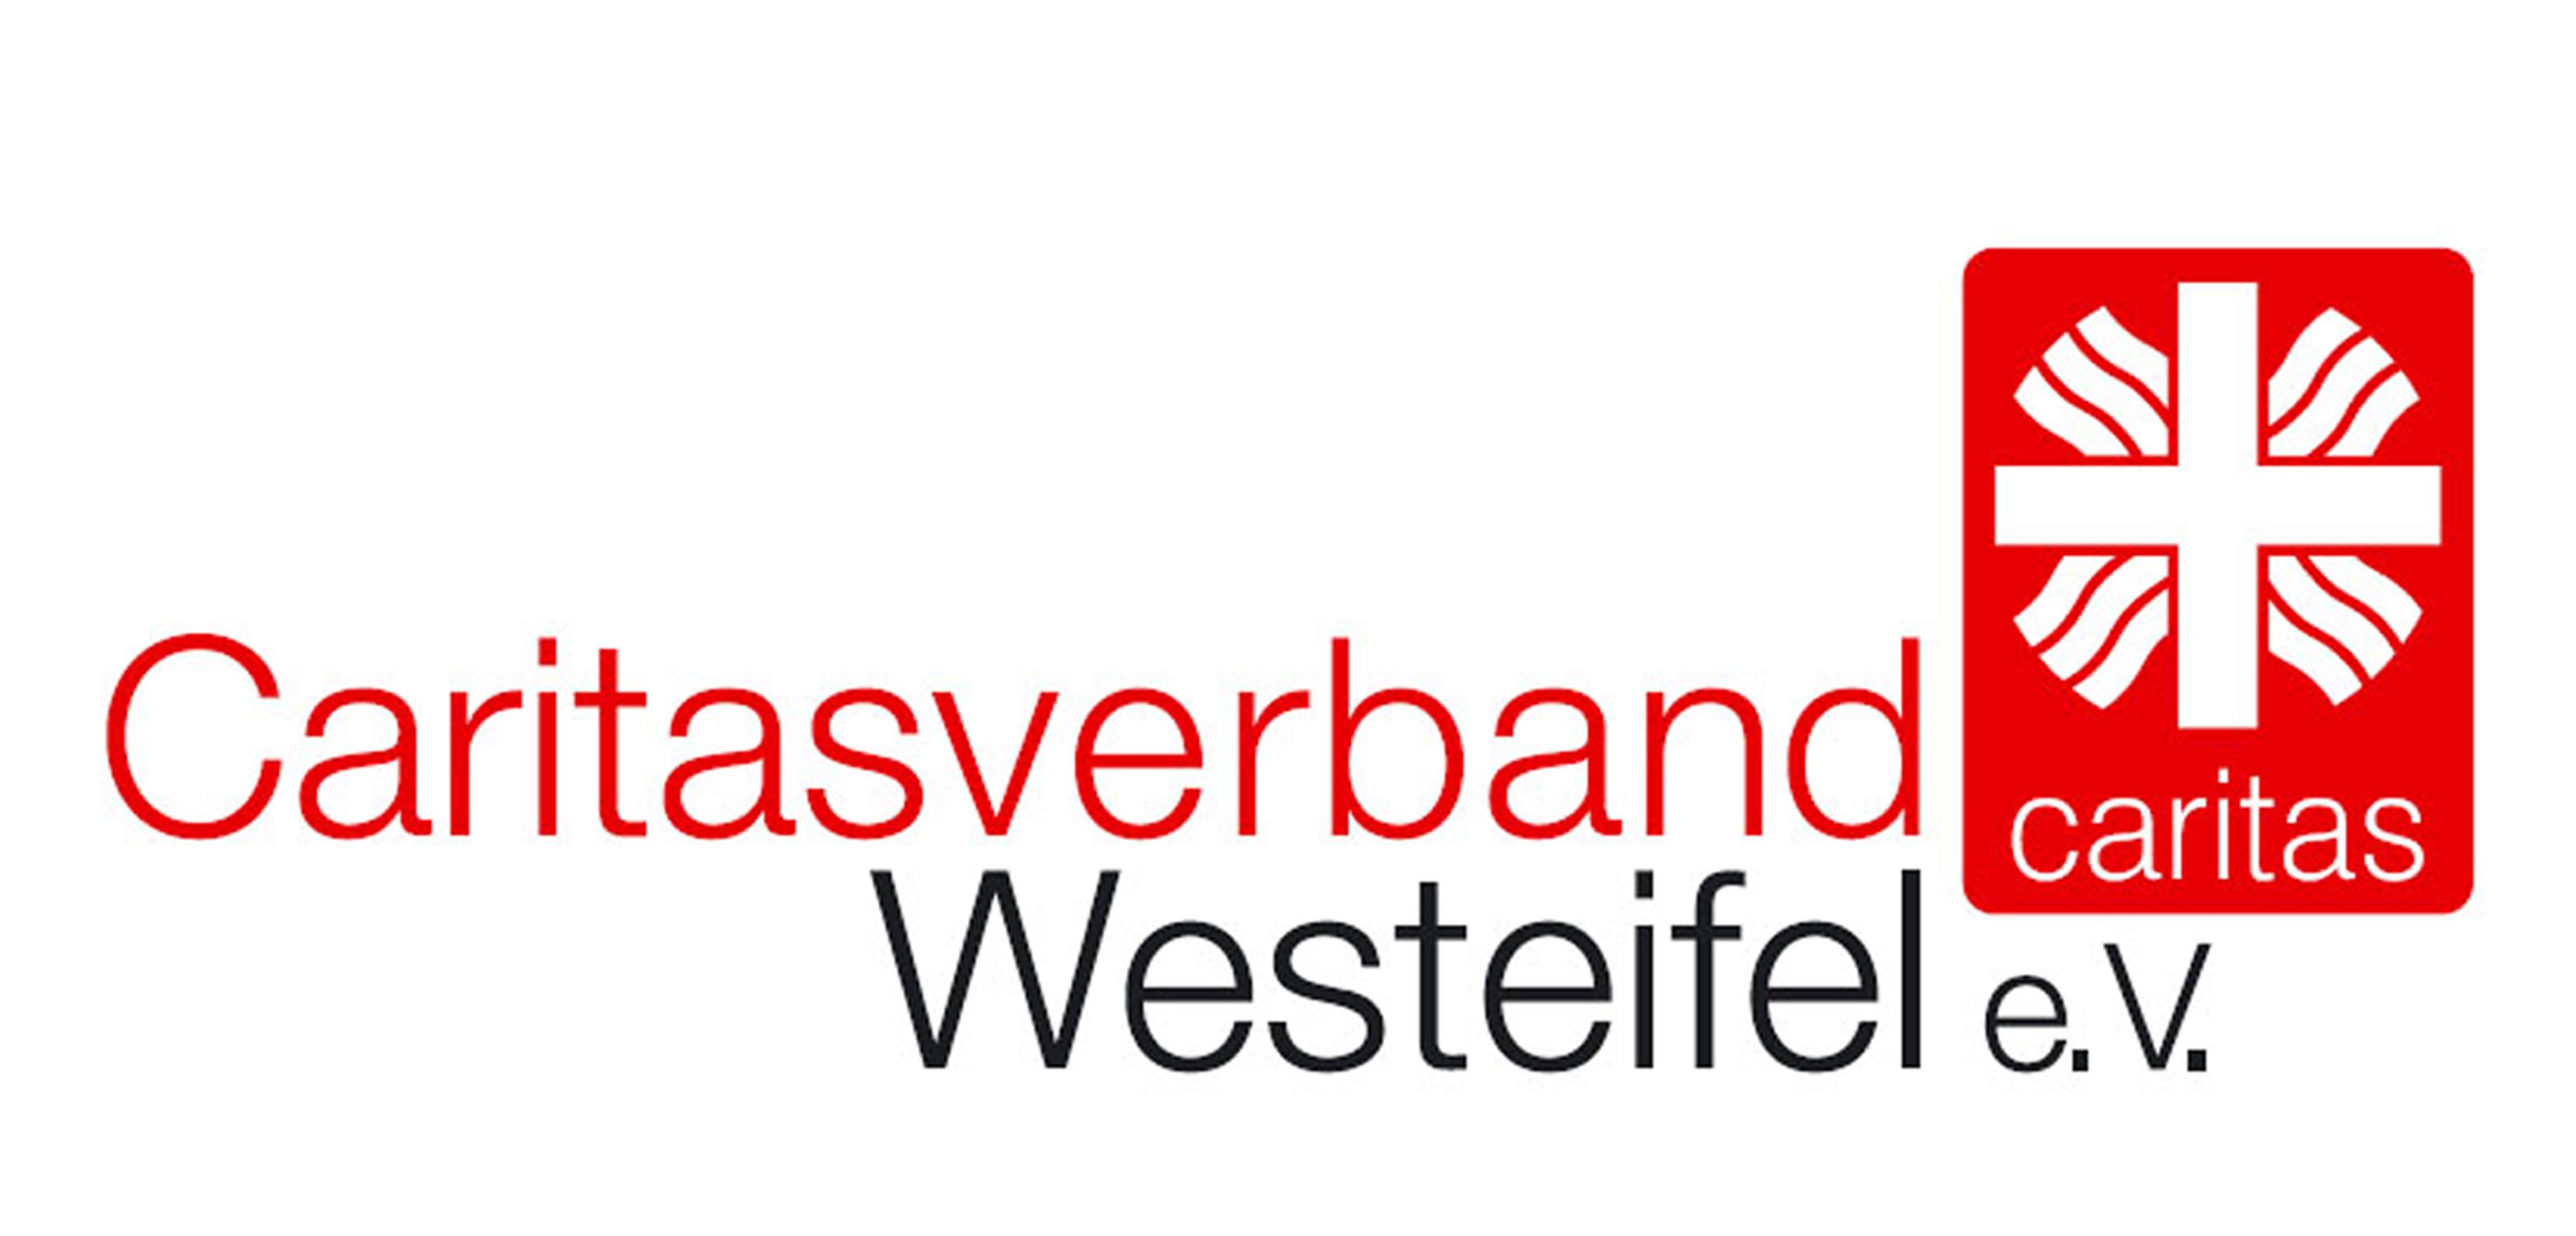 Caritasverband Westeifel e. V. –